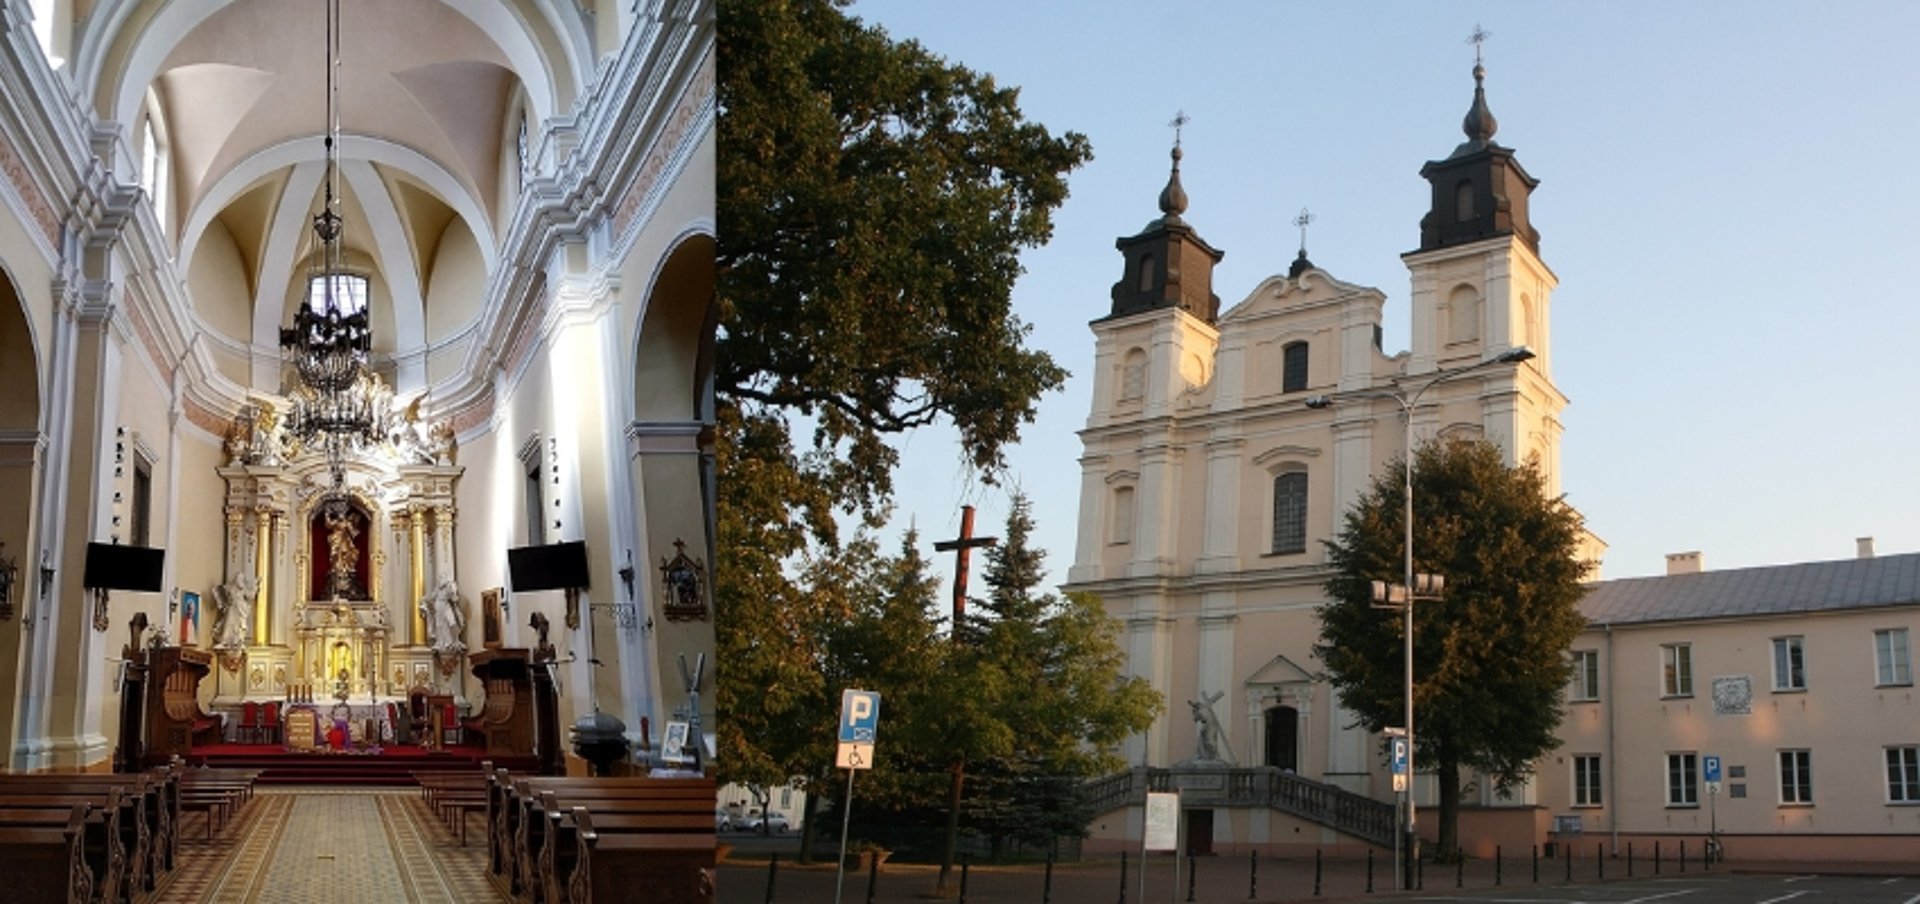 Kościół Przemienienia Pańskiego w Łukowie